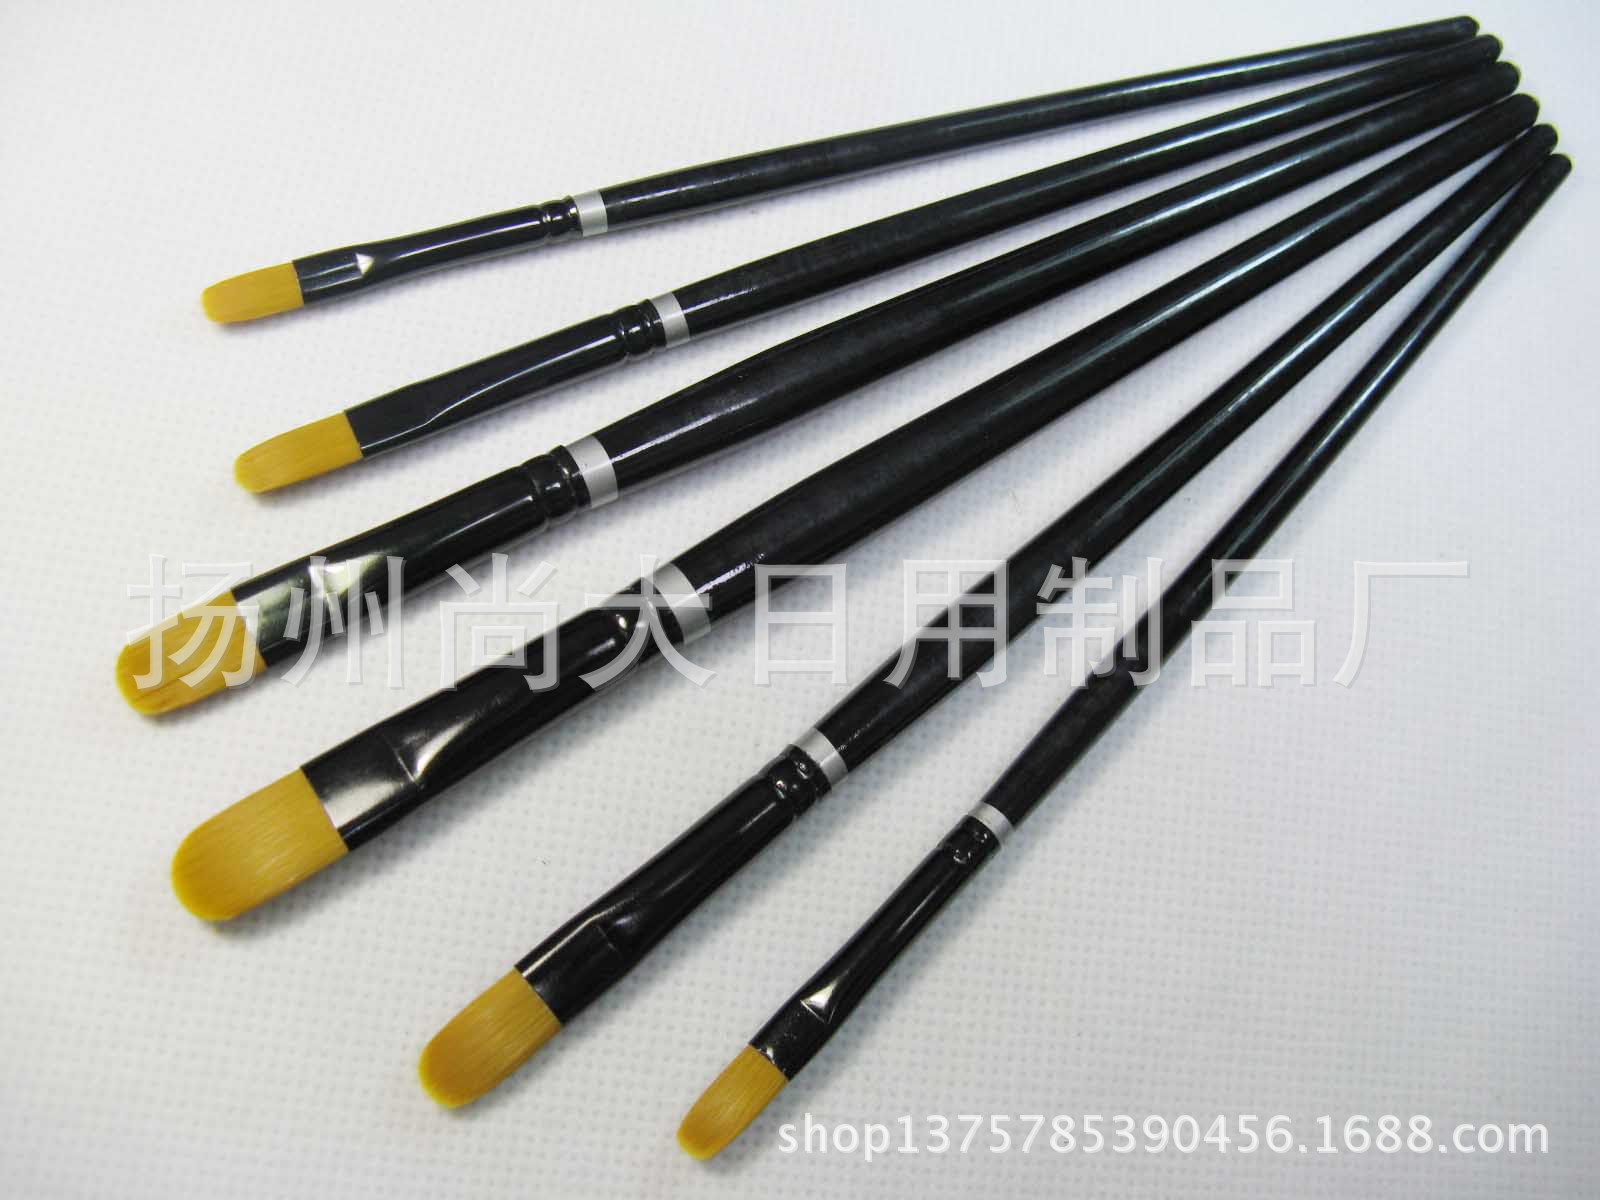 厂家低价销售 美术画笔 儿童画笔 尼龙毛画笔 笔